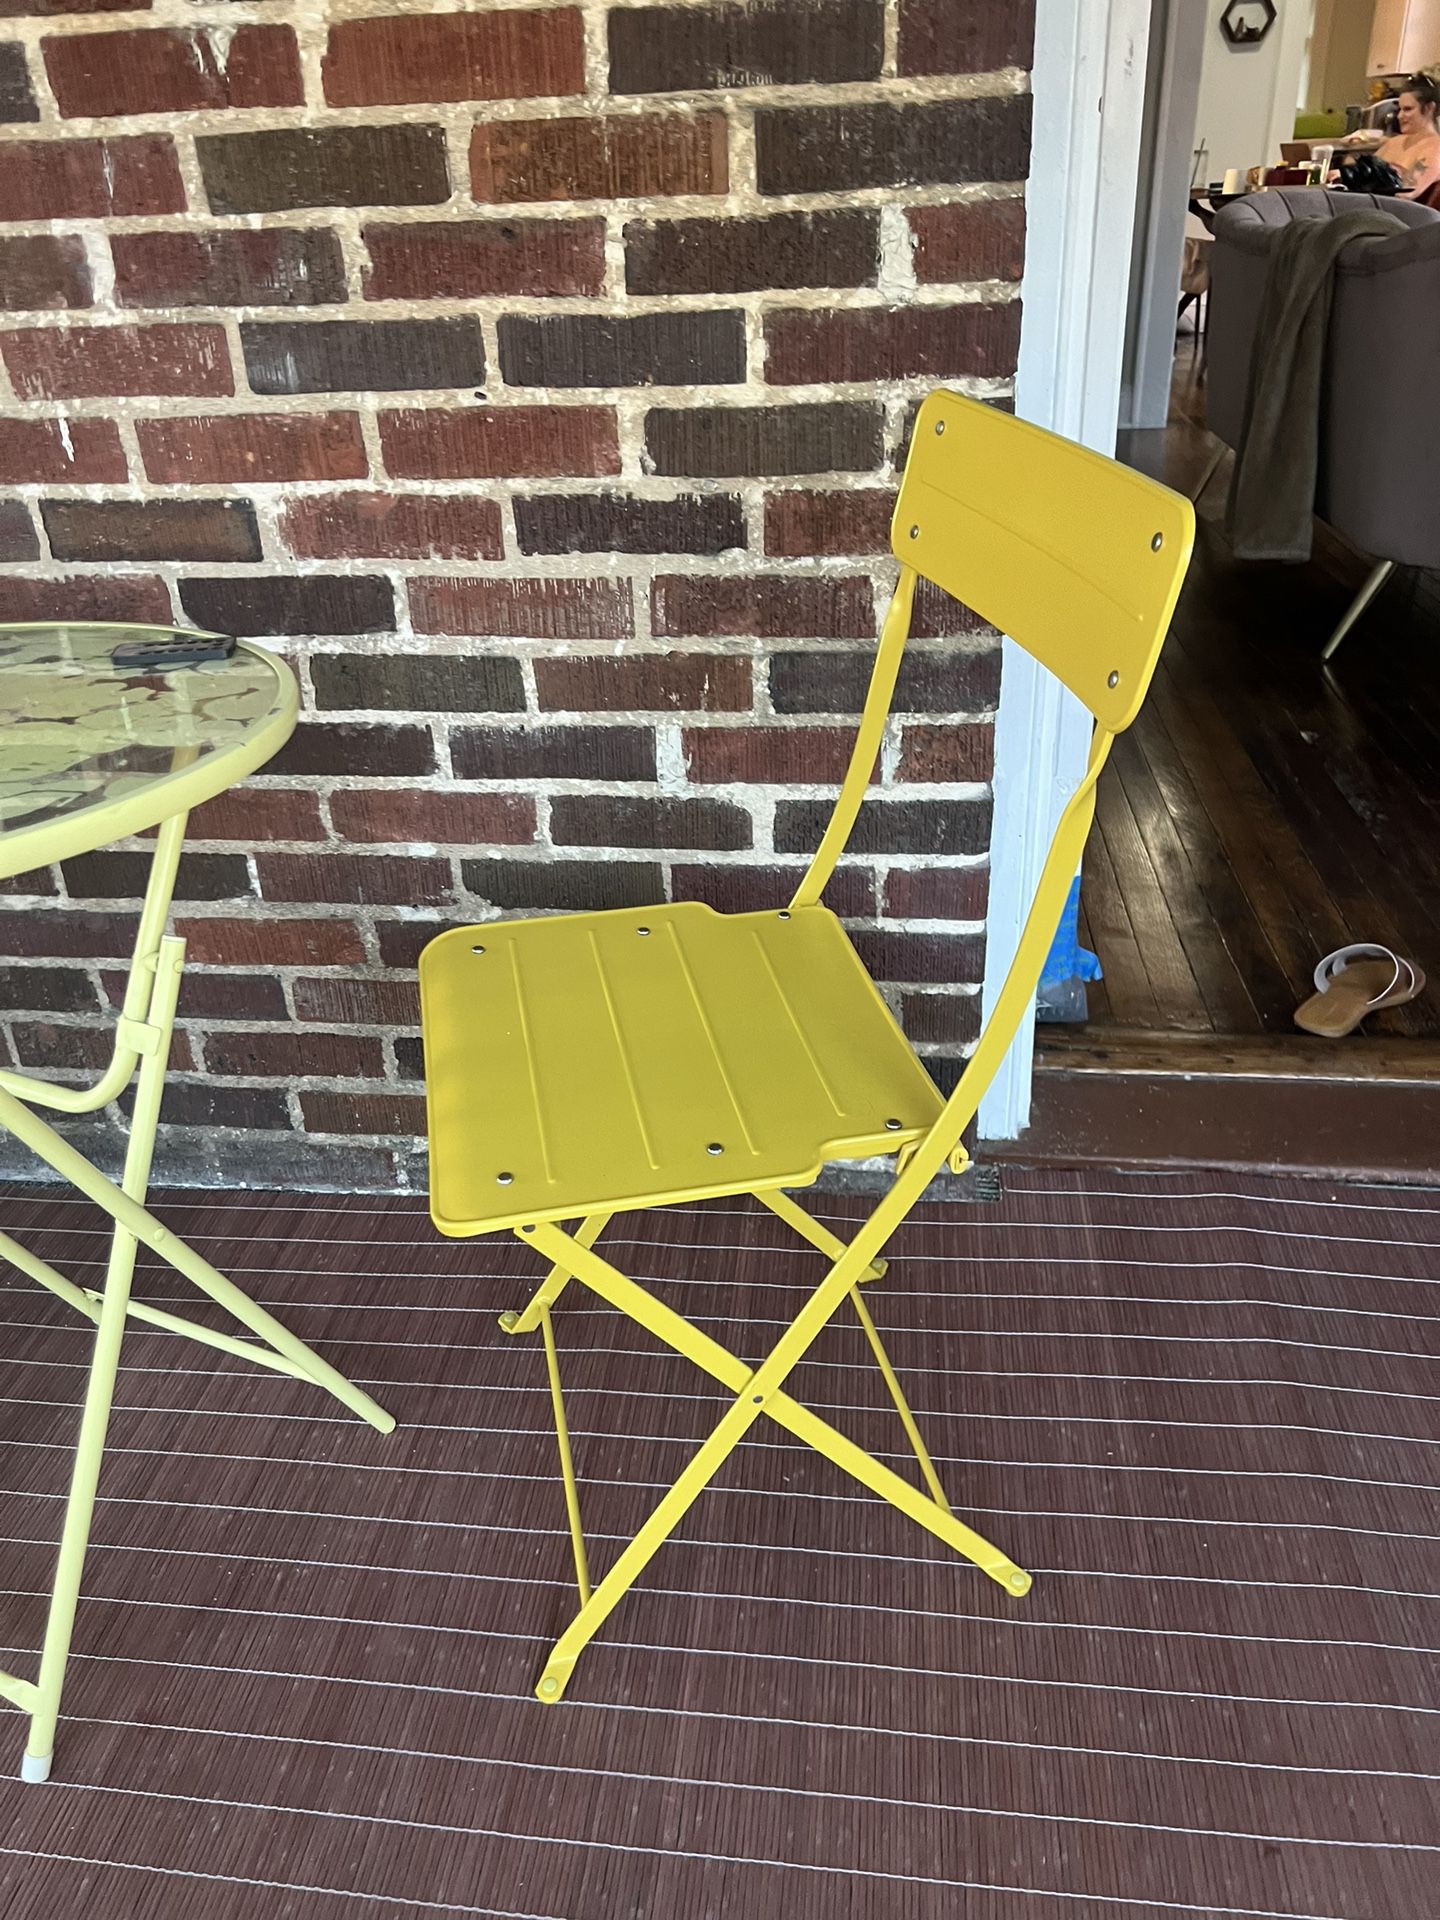 2 IKEA Metal Folding Chairs